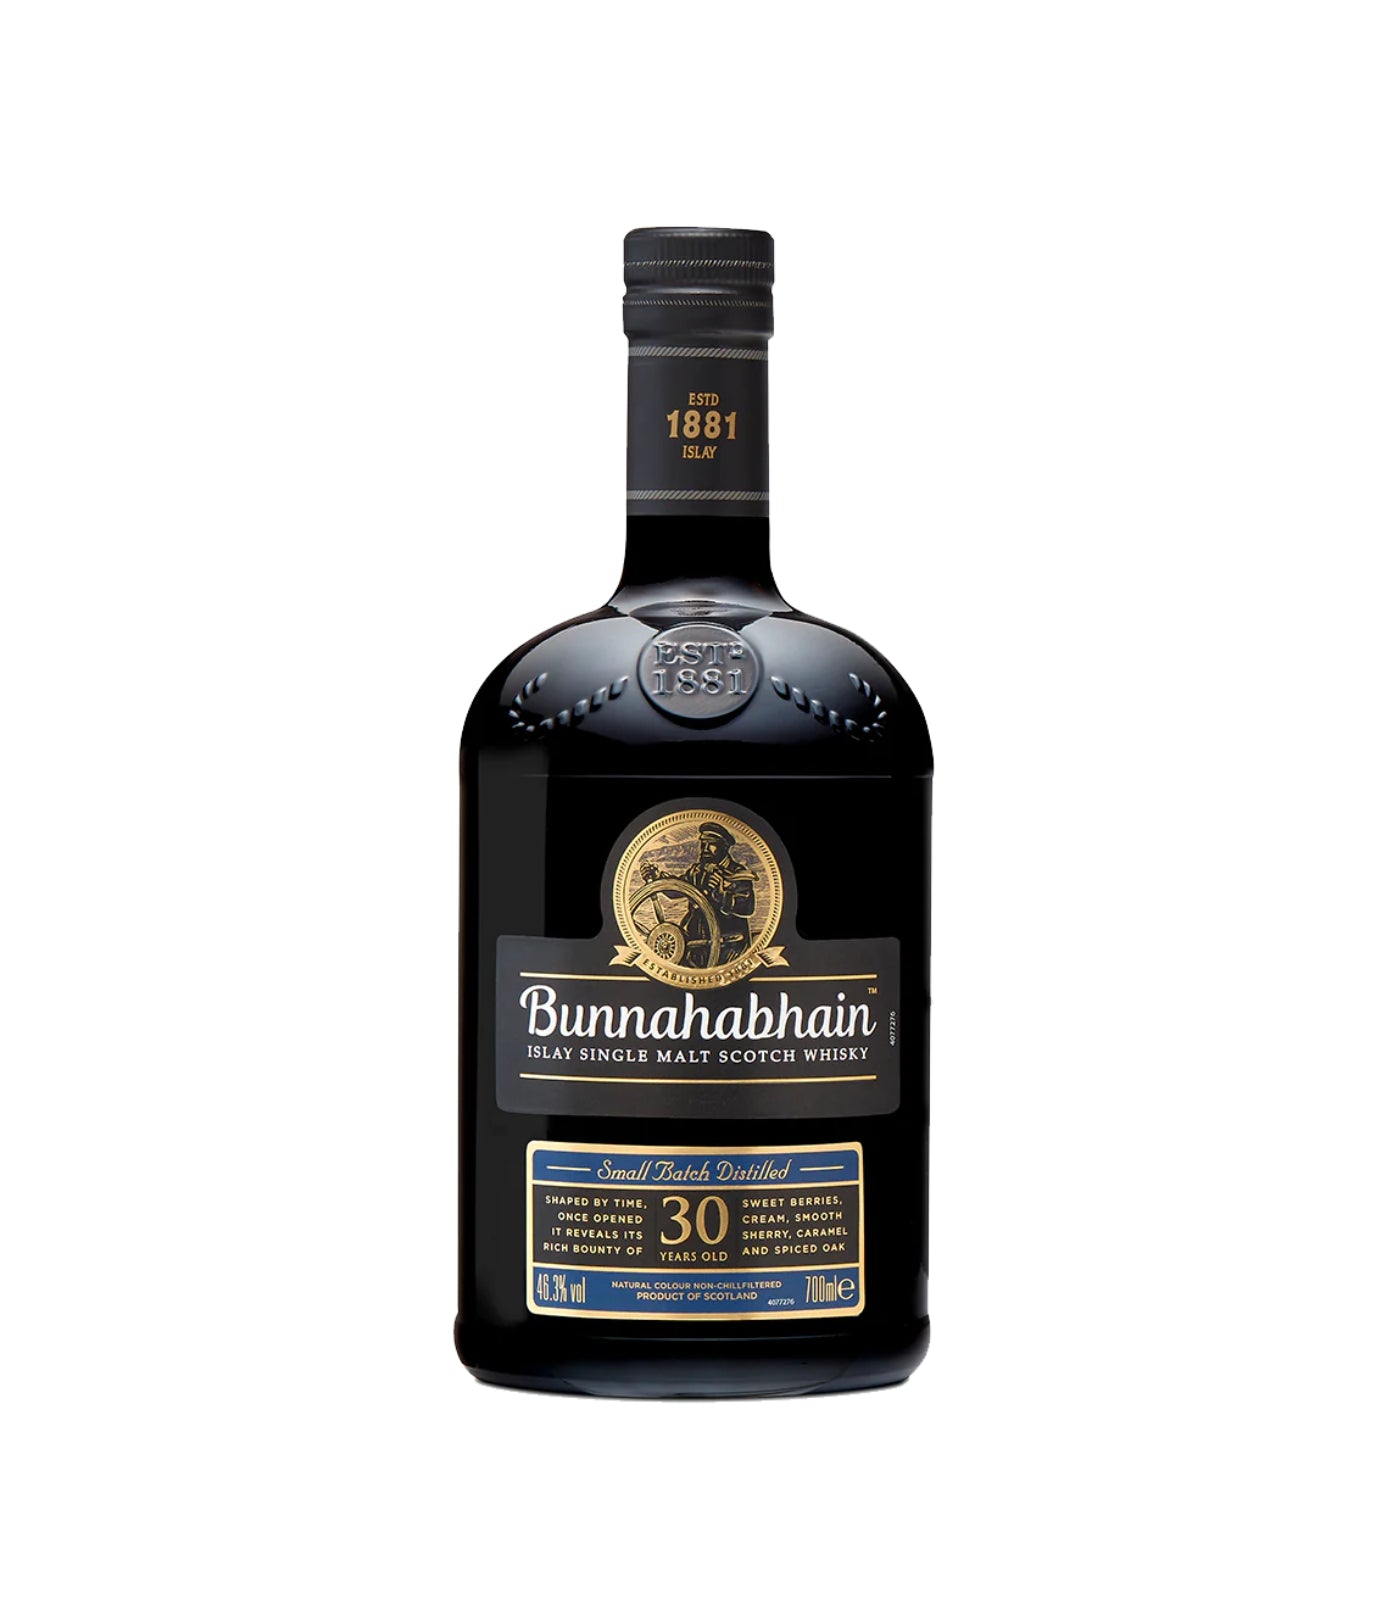 Bunnahabhain 30 Year Old Whisky (70cl, 46.3%)